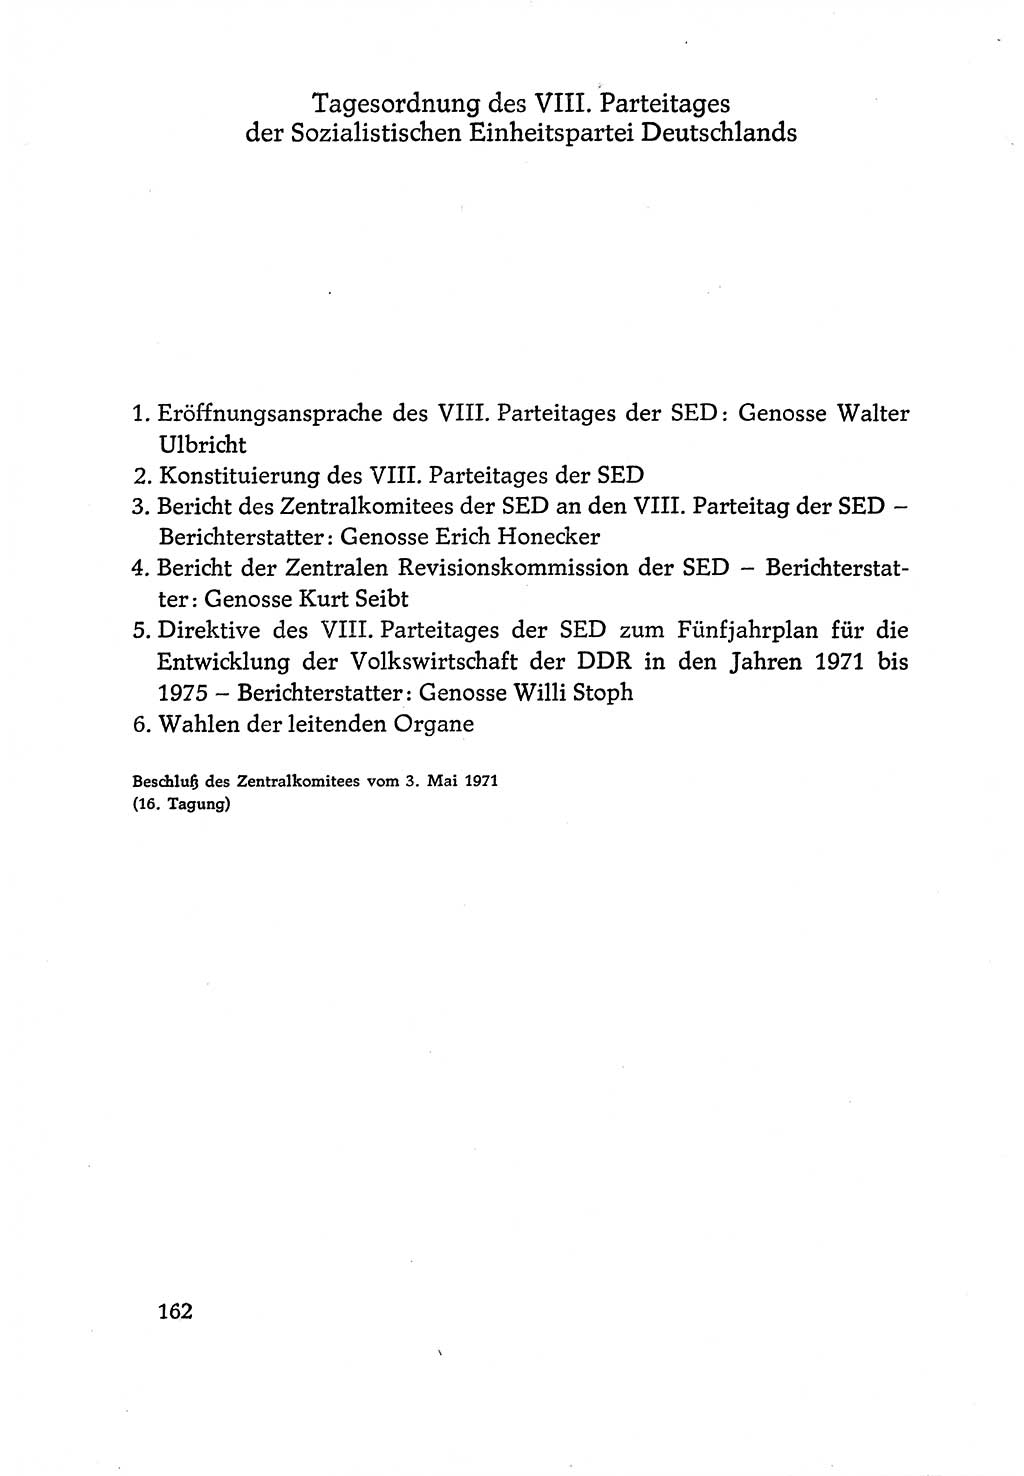 Dokumente der Sozialistischen Einheitspartei Deutschlands (SED) [Deutsche Demokratische Republik (DDR)] 1970-1971, Seite 162 (Dok. SED DDR 1970-1971, S. 162)